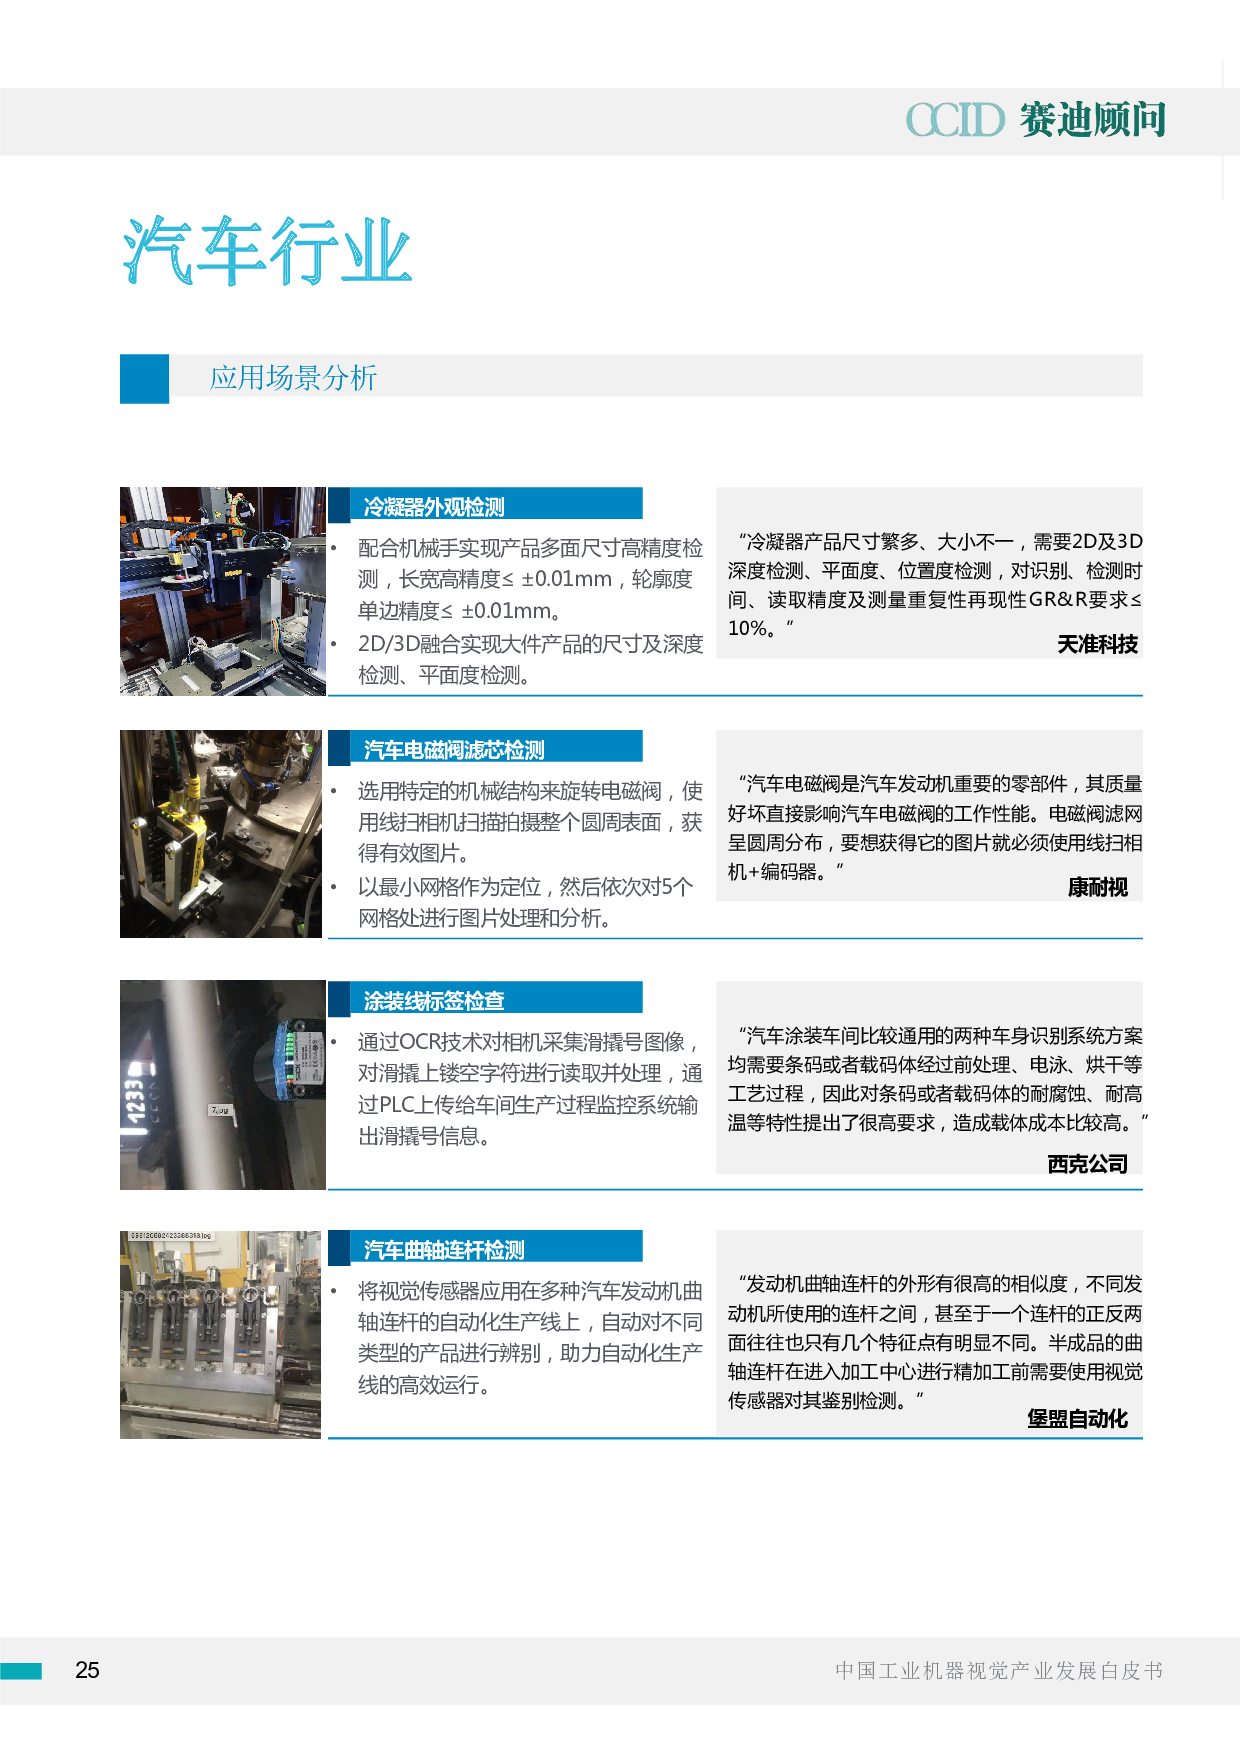 中国工业机器视觉产业发展白皮书（2020）图片